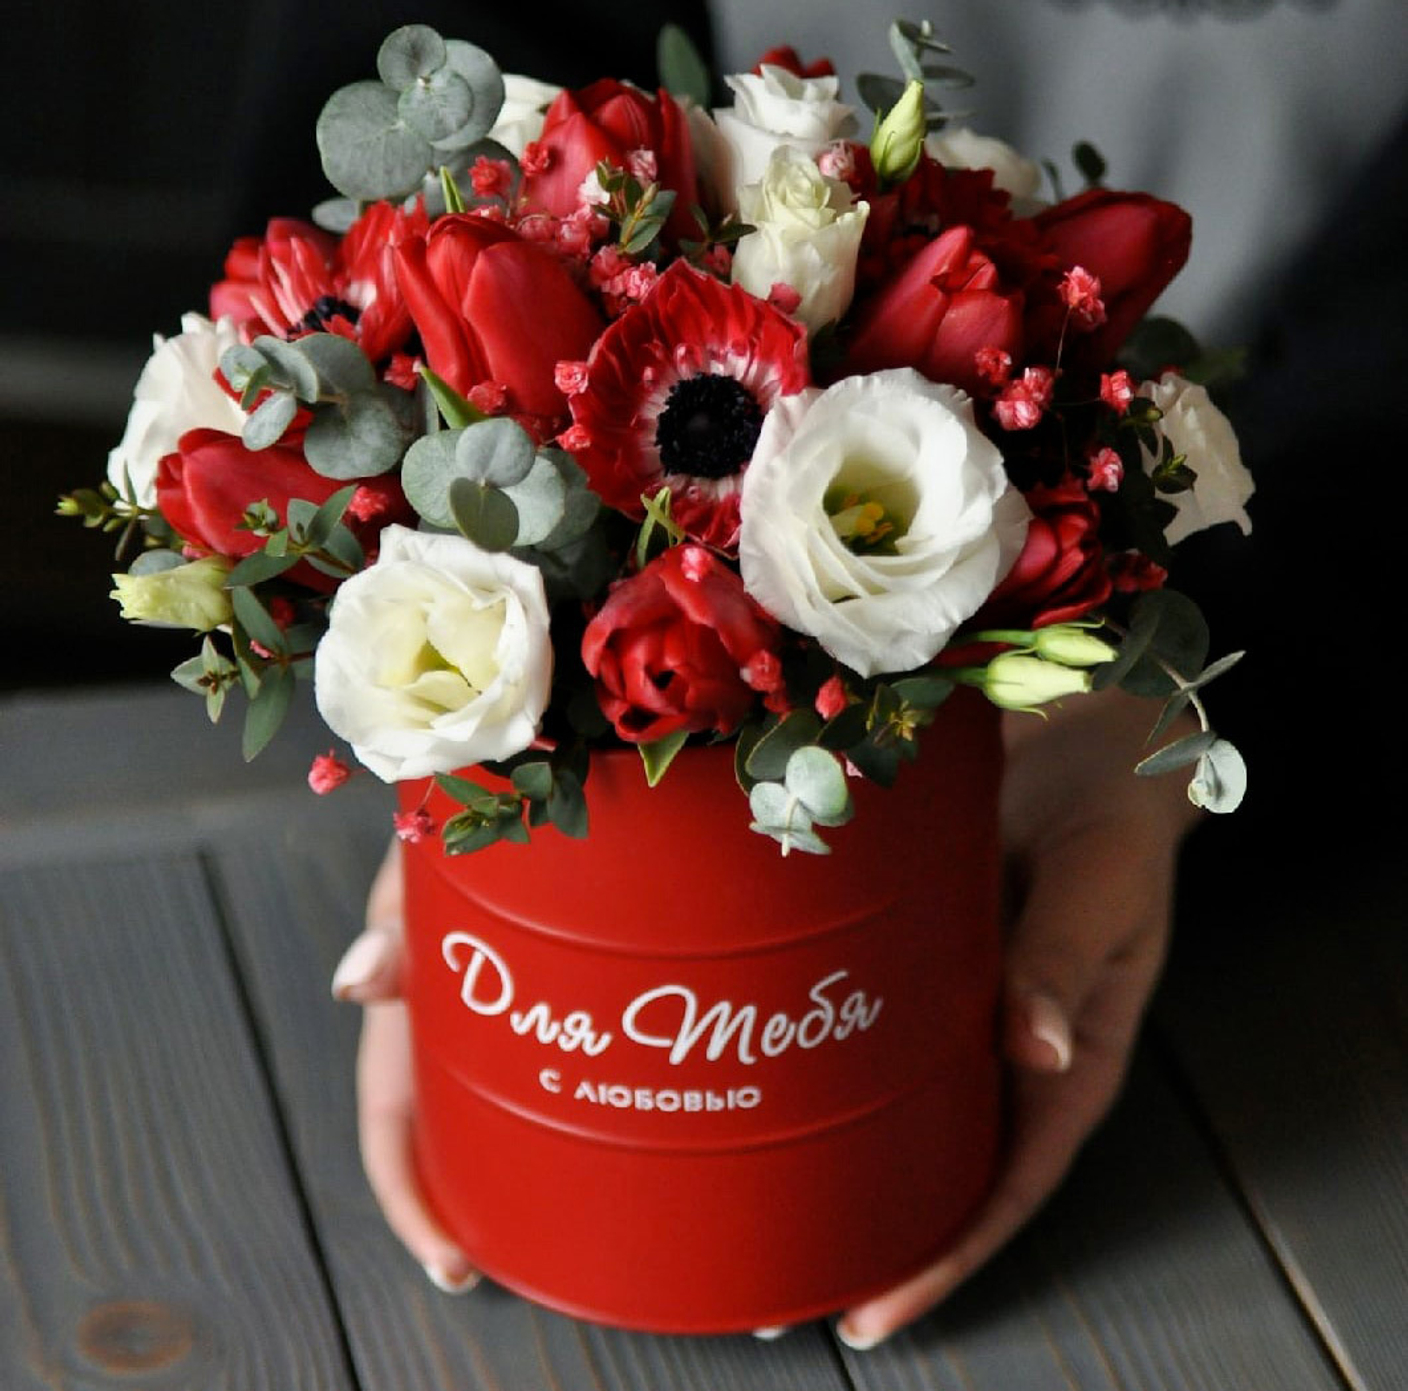 Купить цветы в корзине в Москве - необычный подарок на любой повод